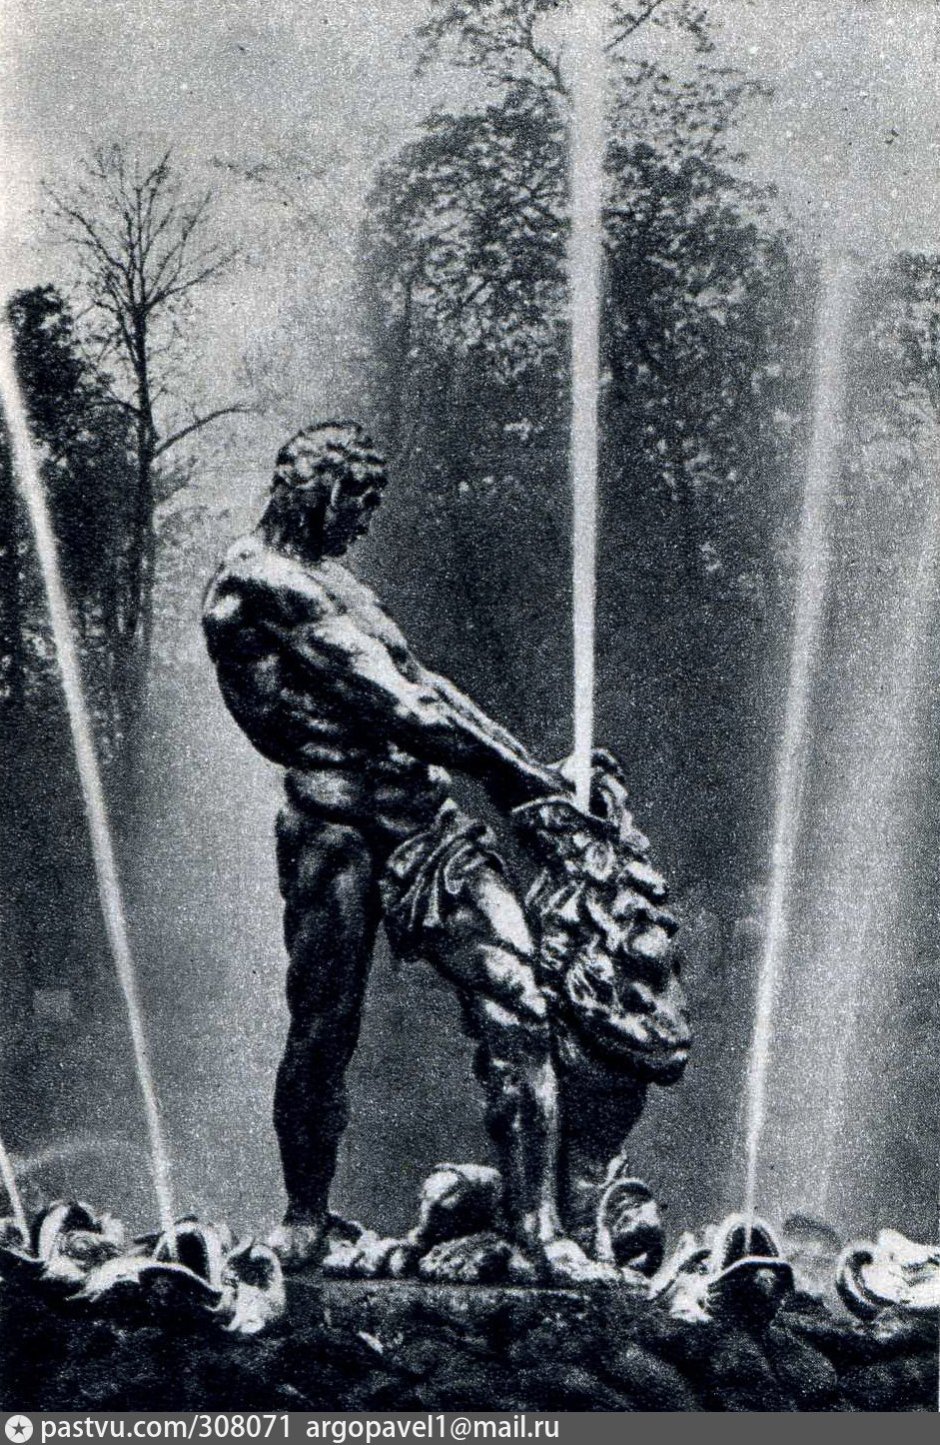 Козловский скульптор Самсон раздирающий пасть Льва